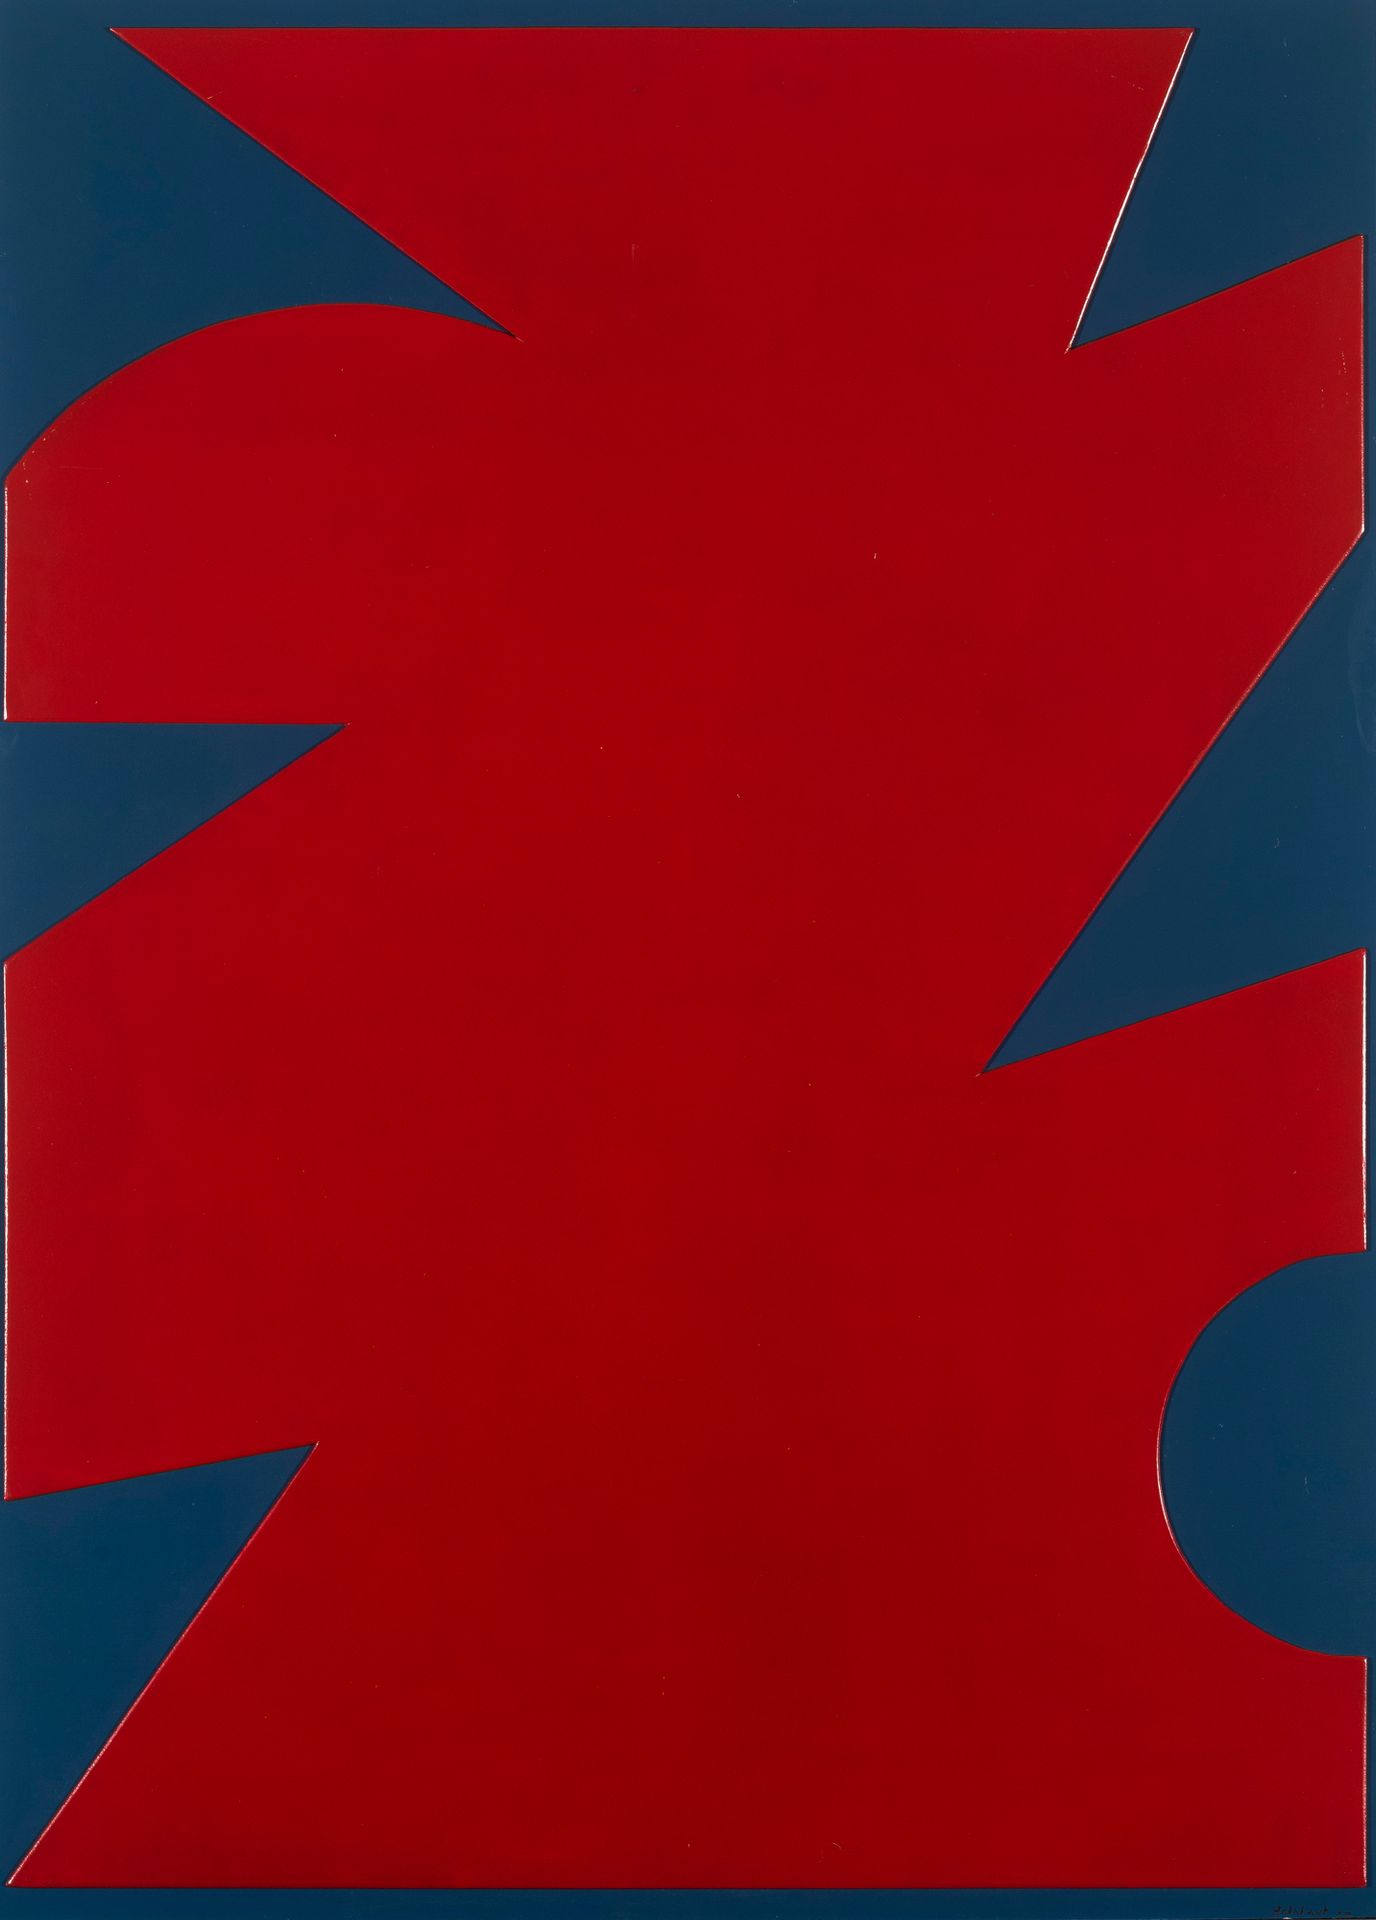 Jo Delahaut (1911-1992) Relation Rouge Bleu n°3, 1967
Oil on panel in light reli&hellip;